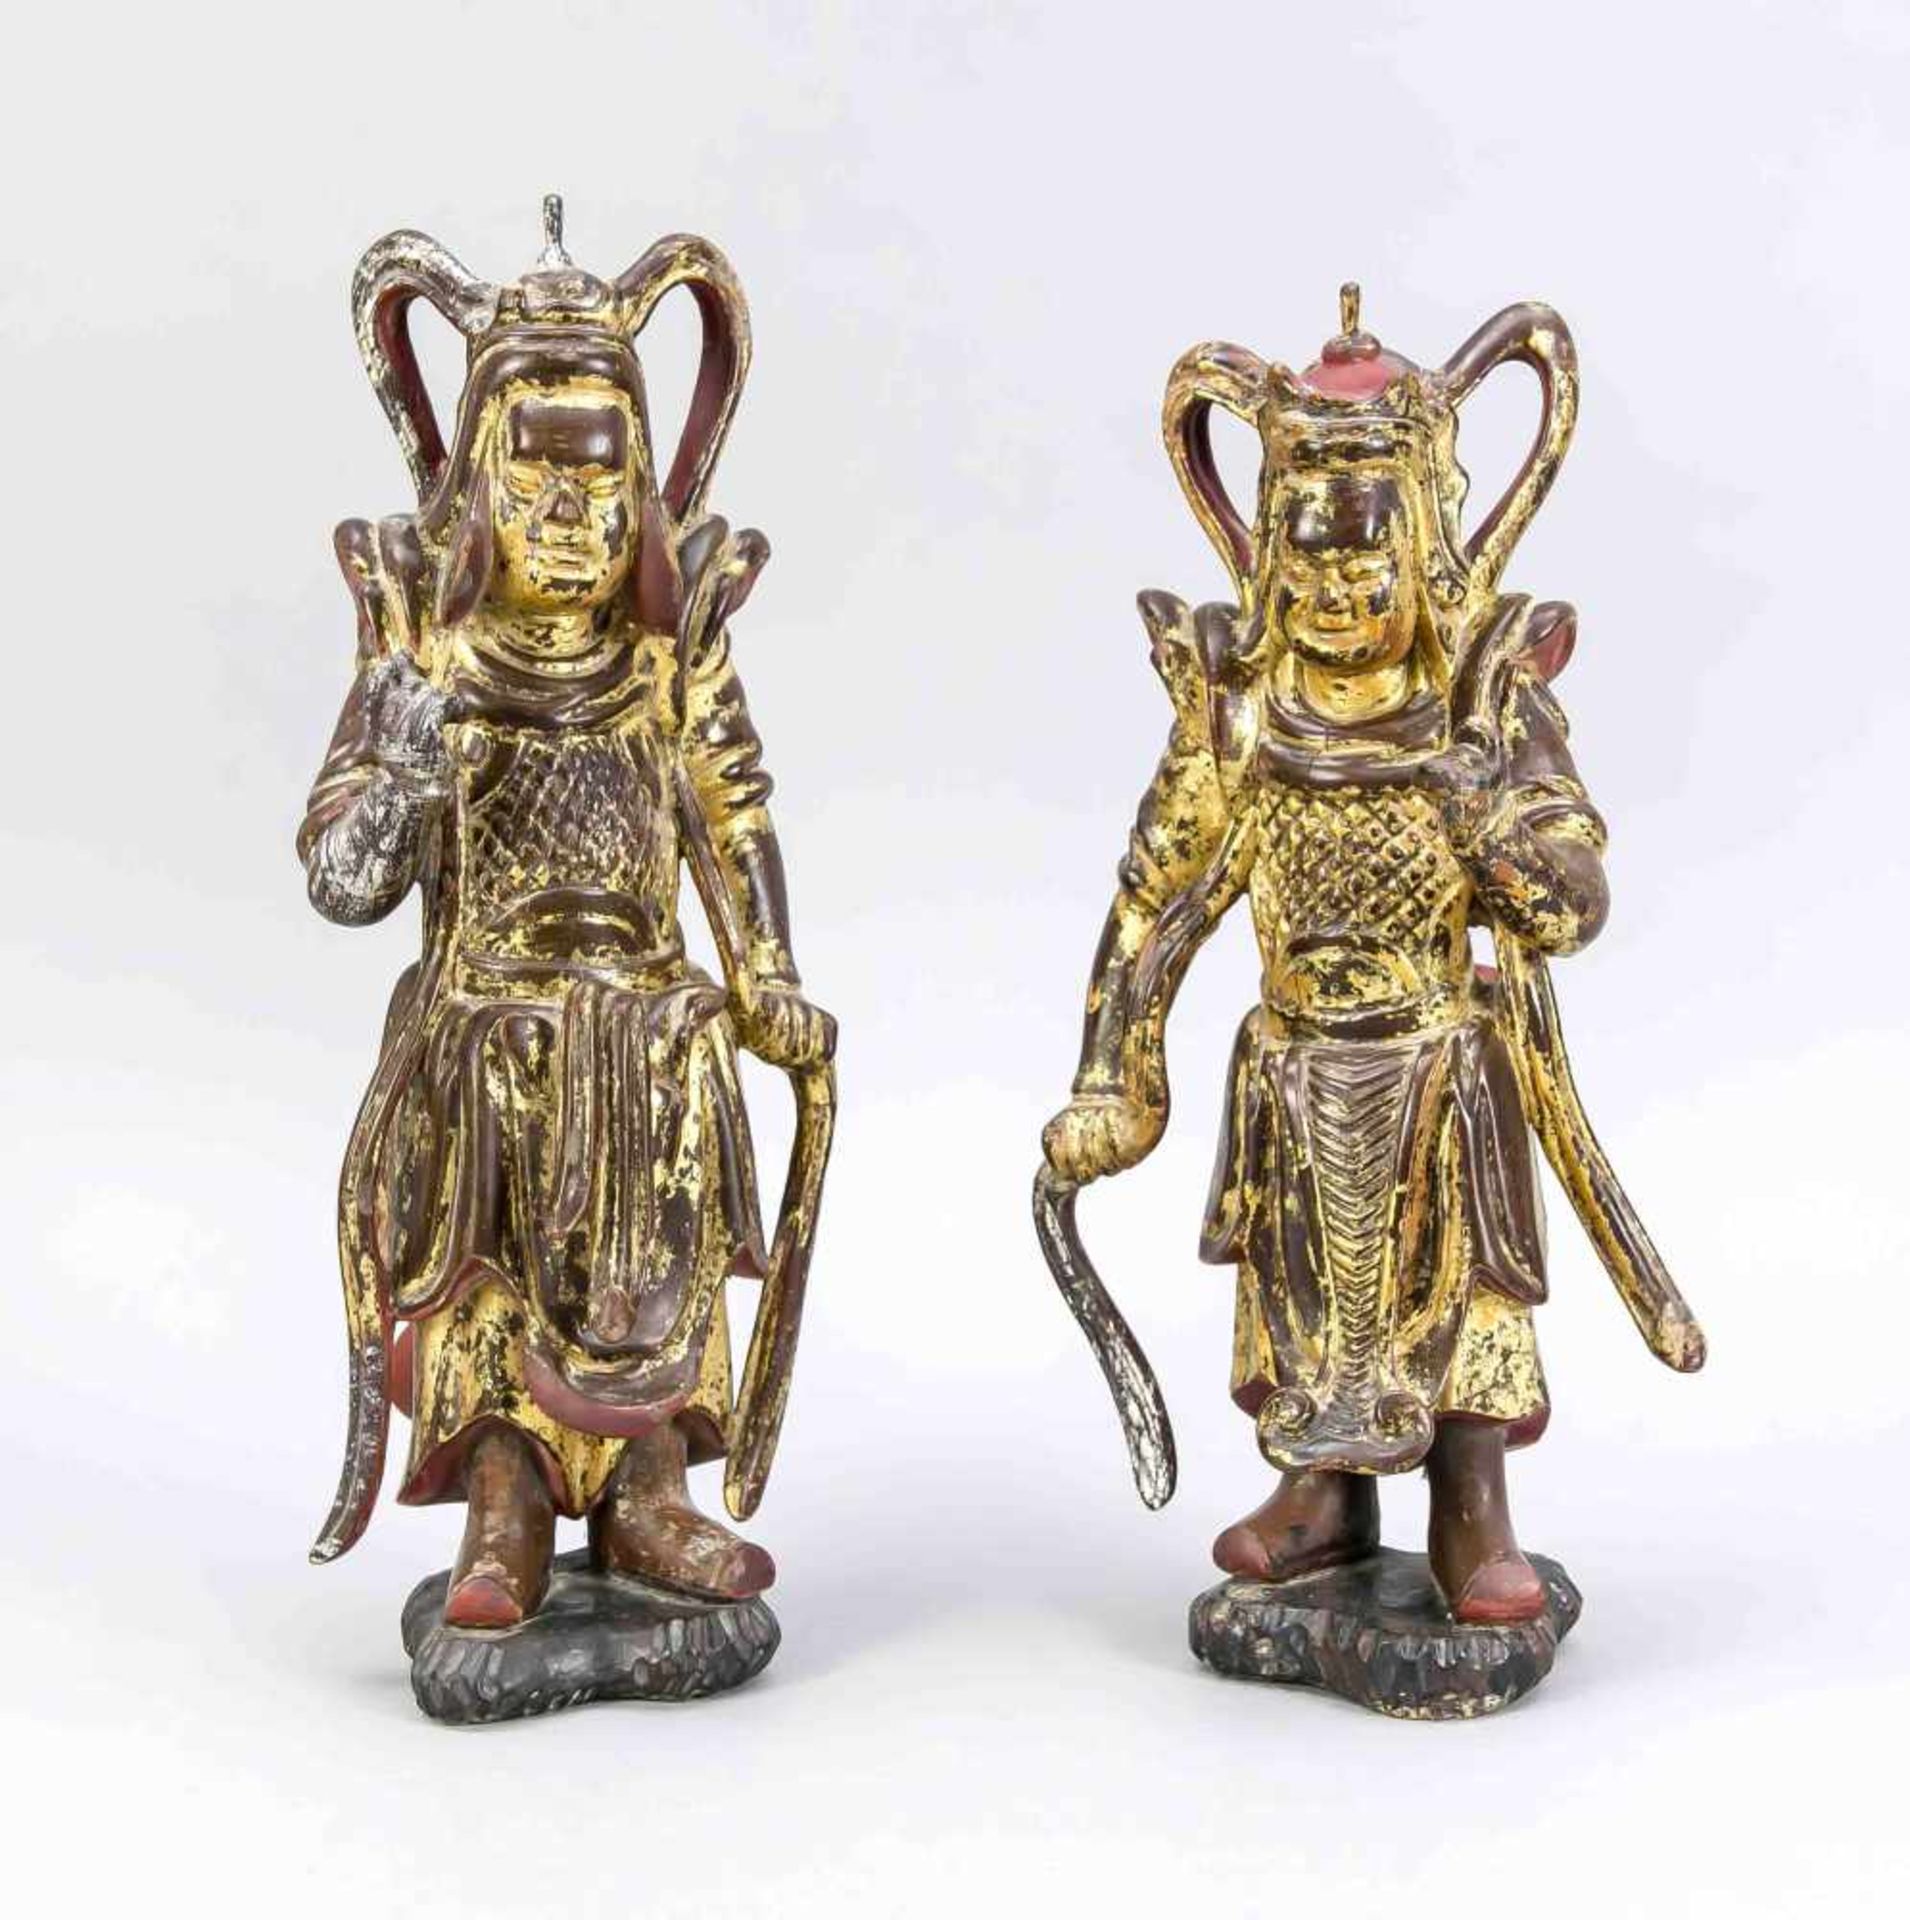 Paar Wächterfiguren, China, wohl 19. Jh. Auf einen kleinen naturalistischen Sockelgestellt. Holz